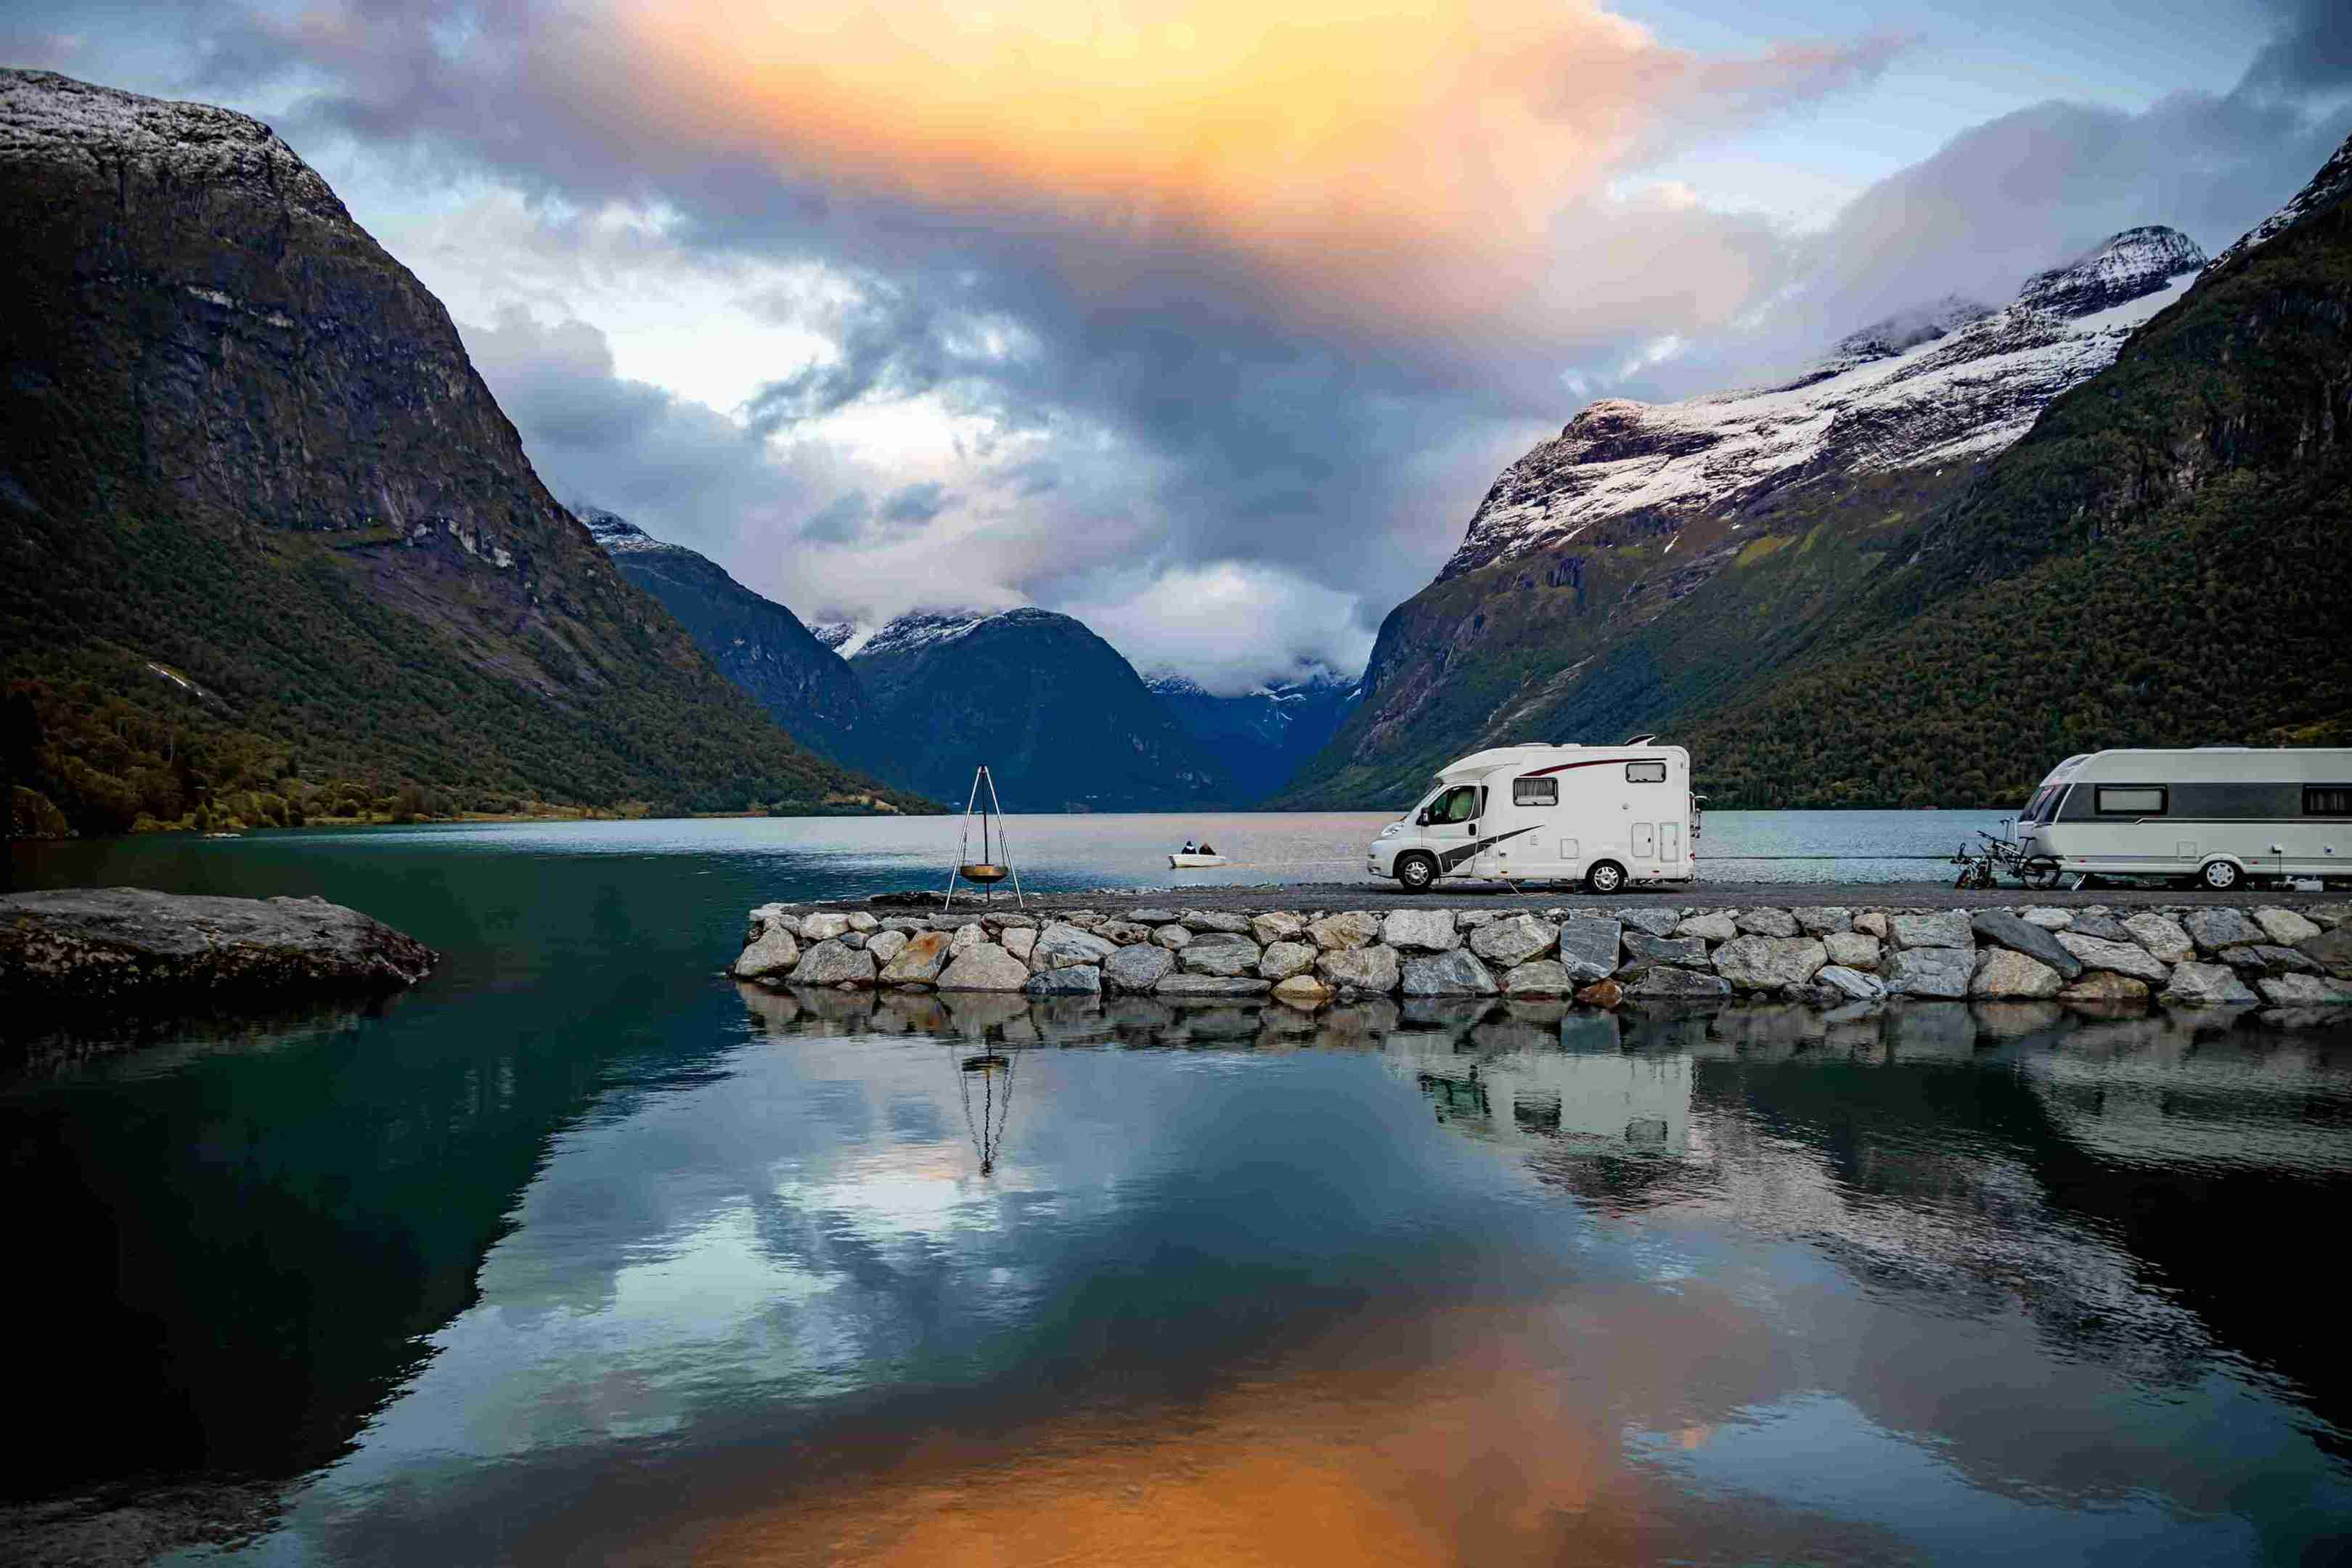 Caravaning i Norges smukke natur. To autocampere parkeret bag hinanden ved en sø indrammet af bjerge. 